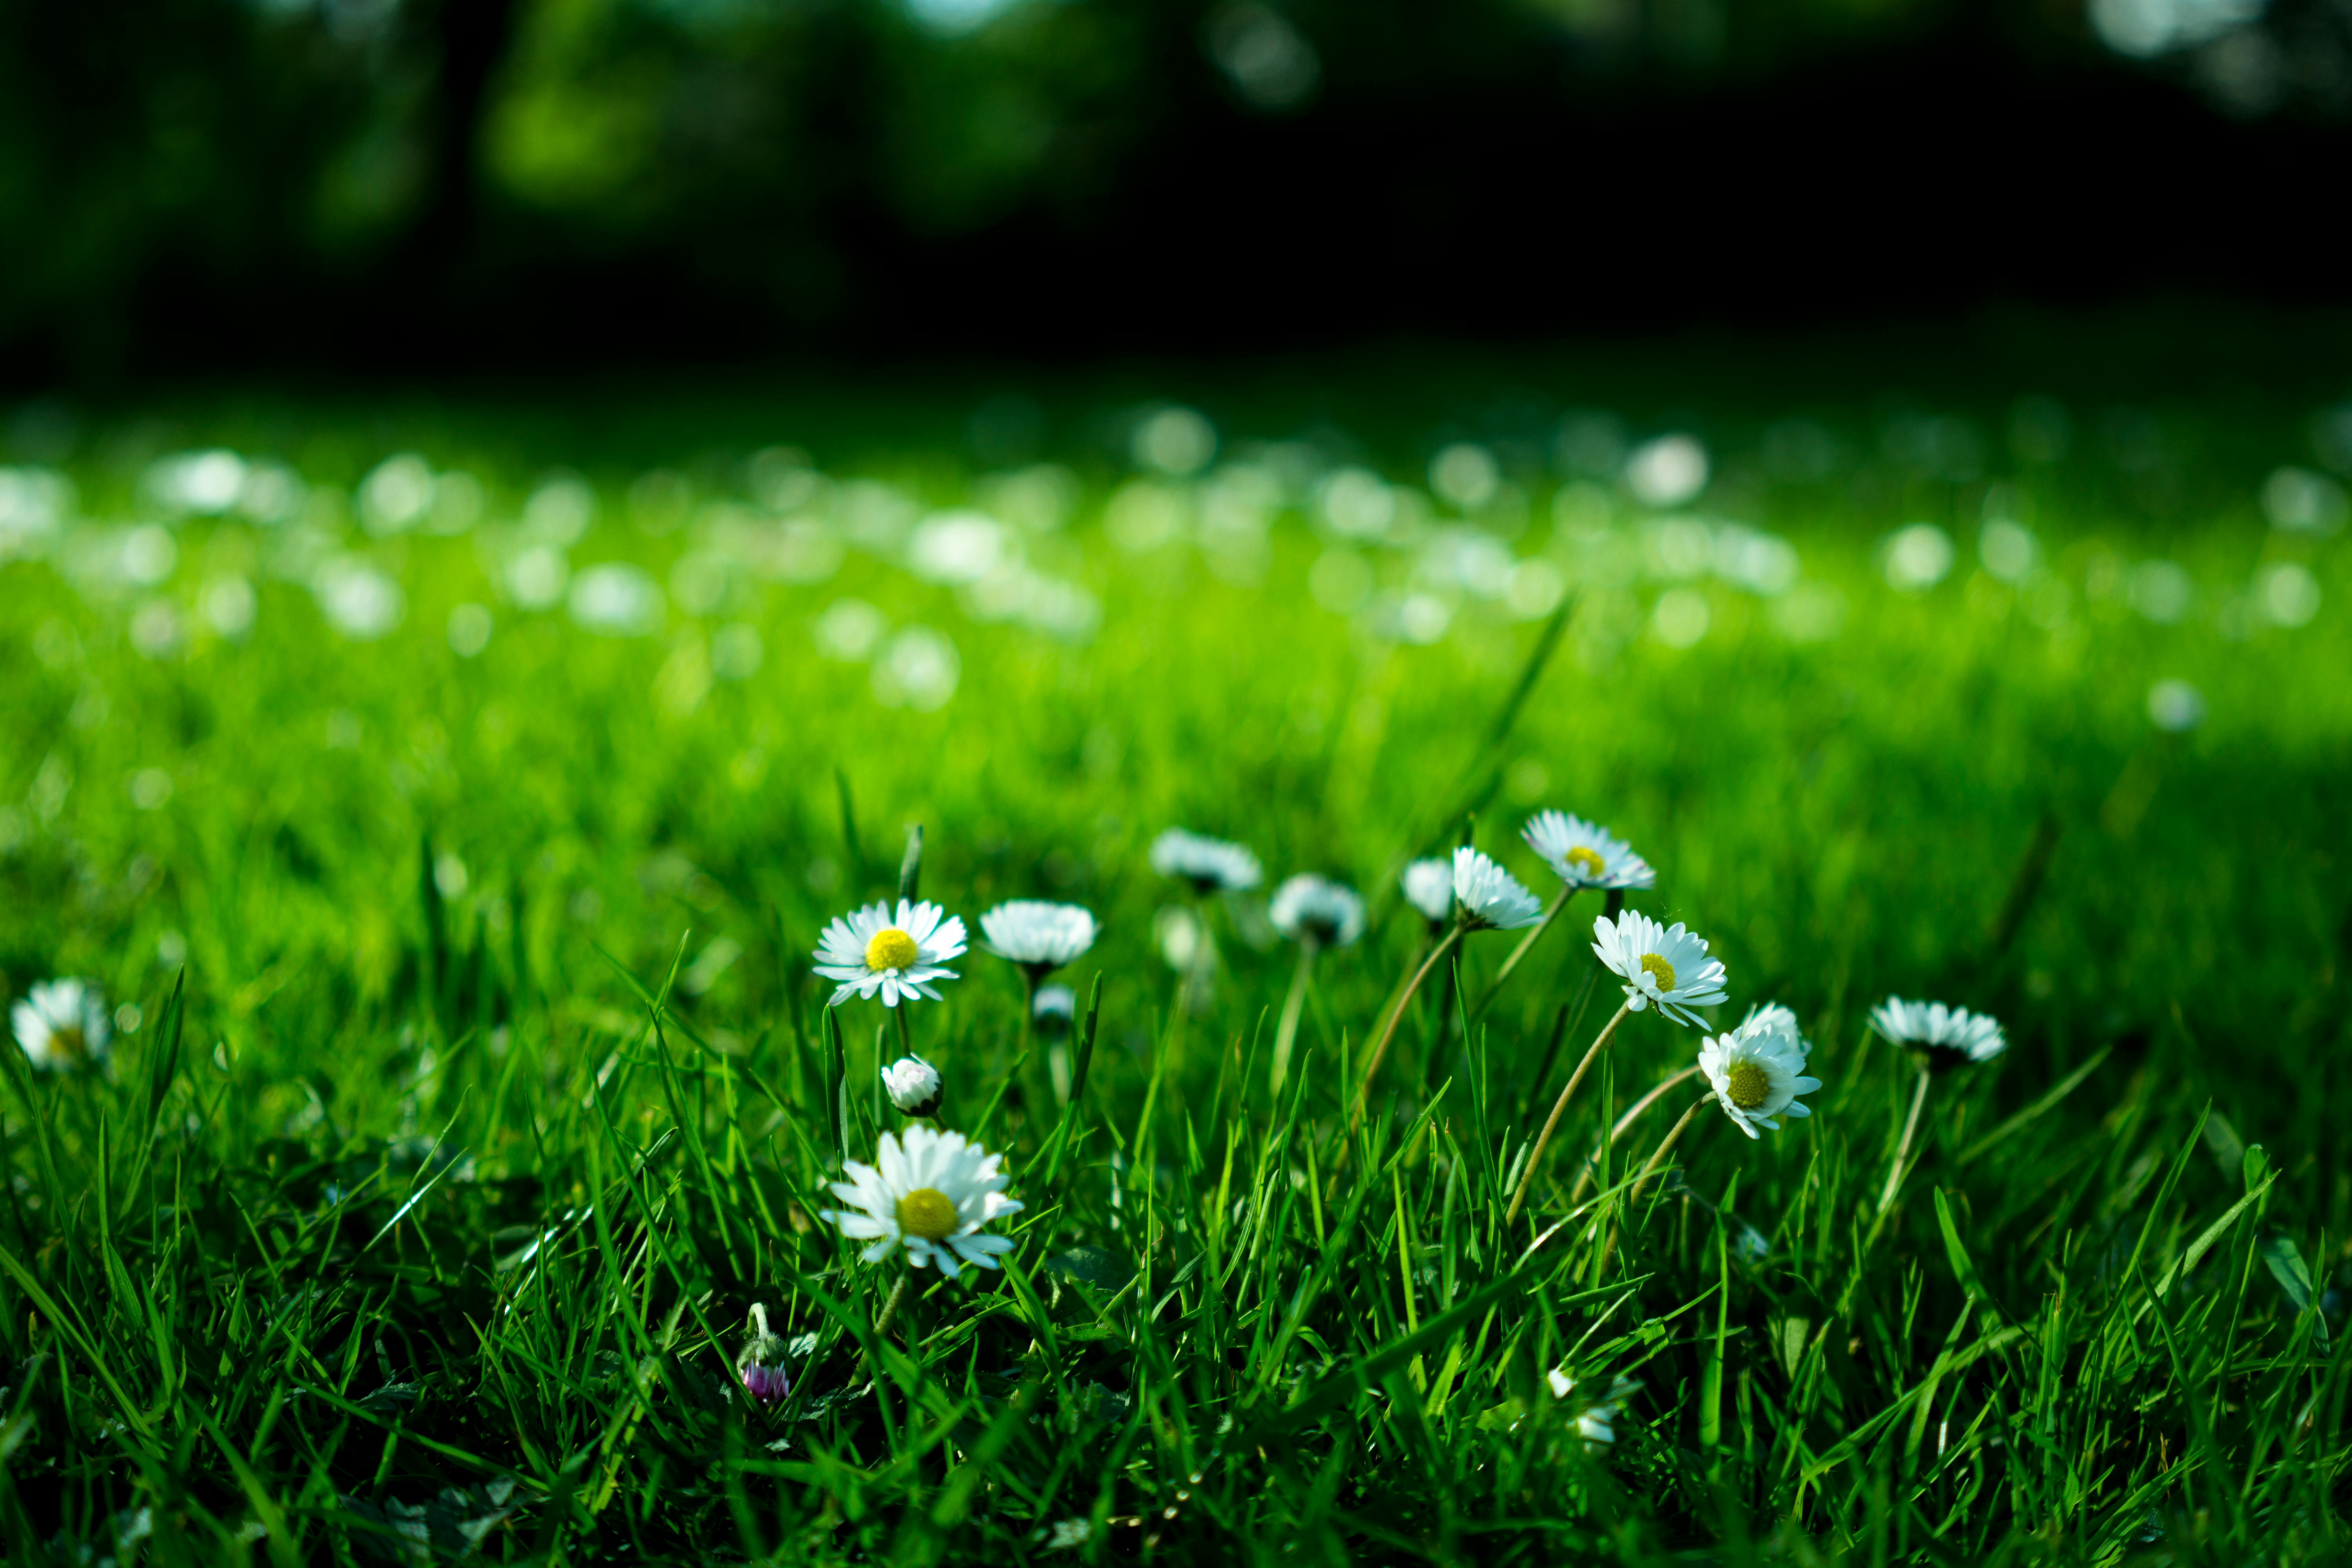 Hoa cúc trắng tinh khôi, tươi tắn như một cơn gió mùa xuân. Hãy xem bức ảnh liên quan để cảm nhận sự tươi mới và sự yên bình mà hoa cúc mang lại.